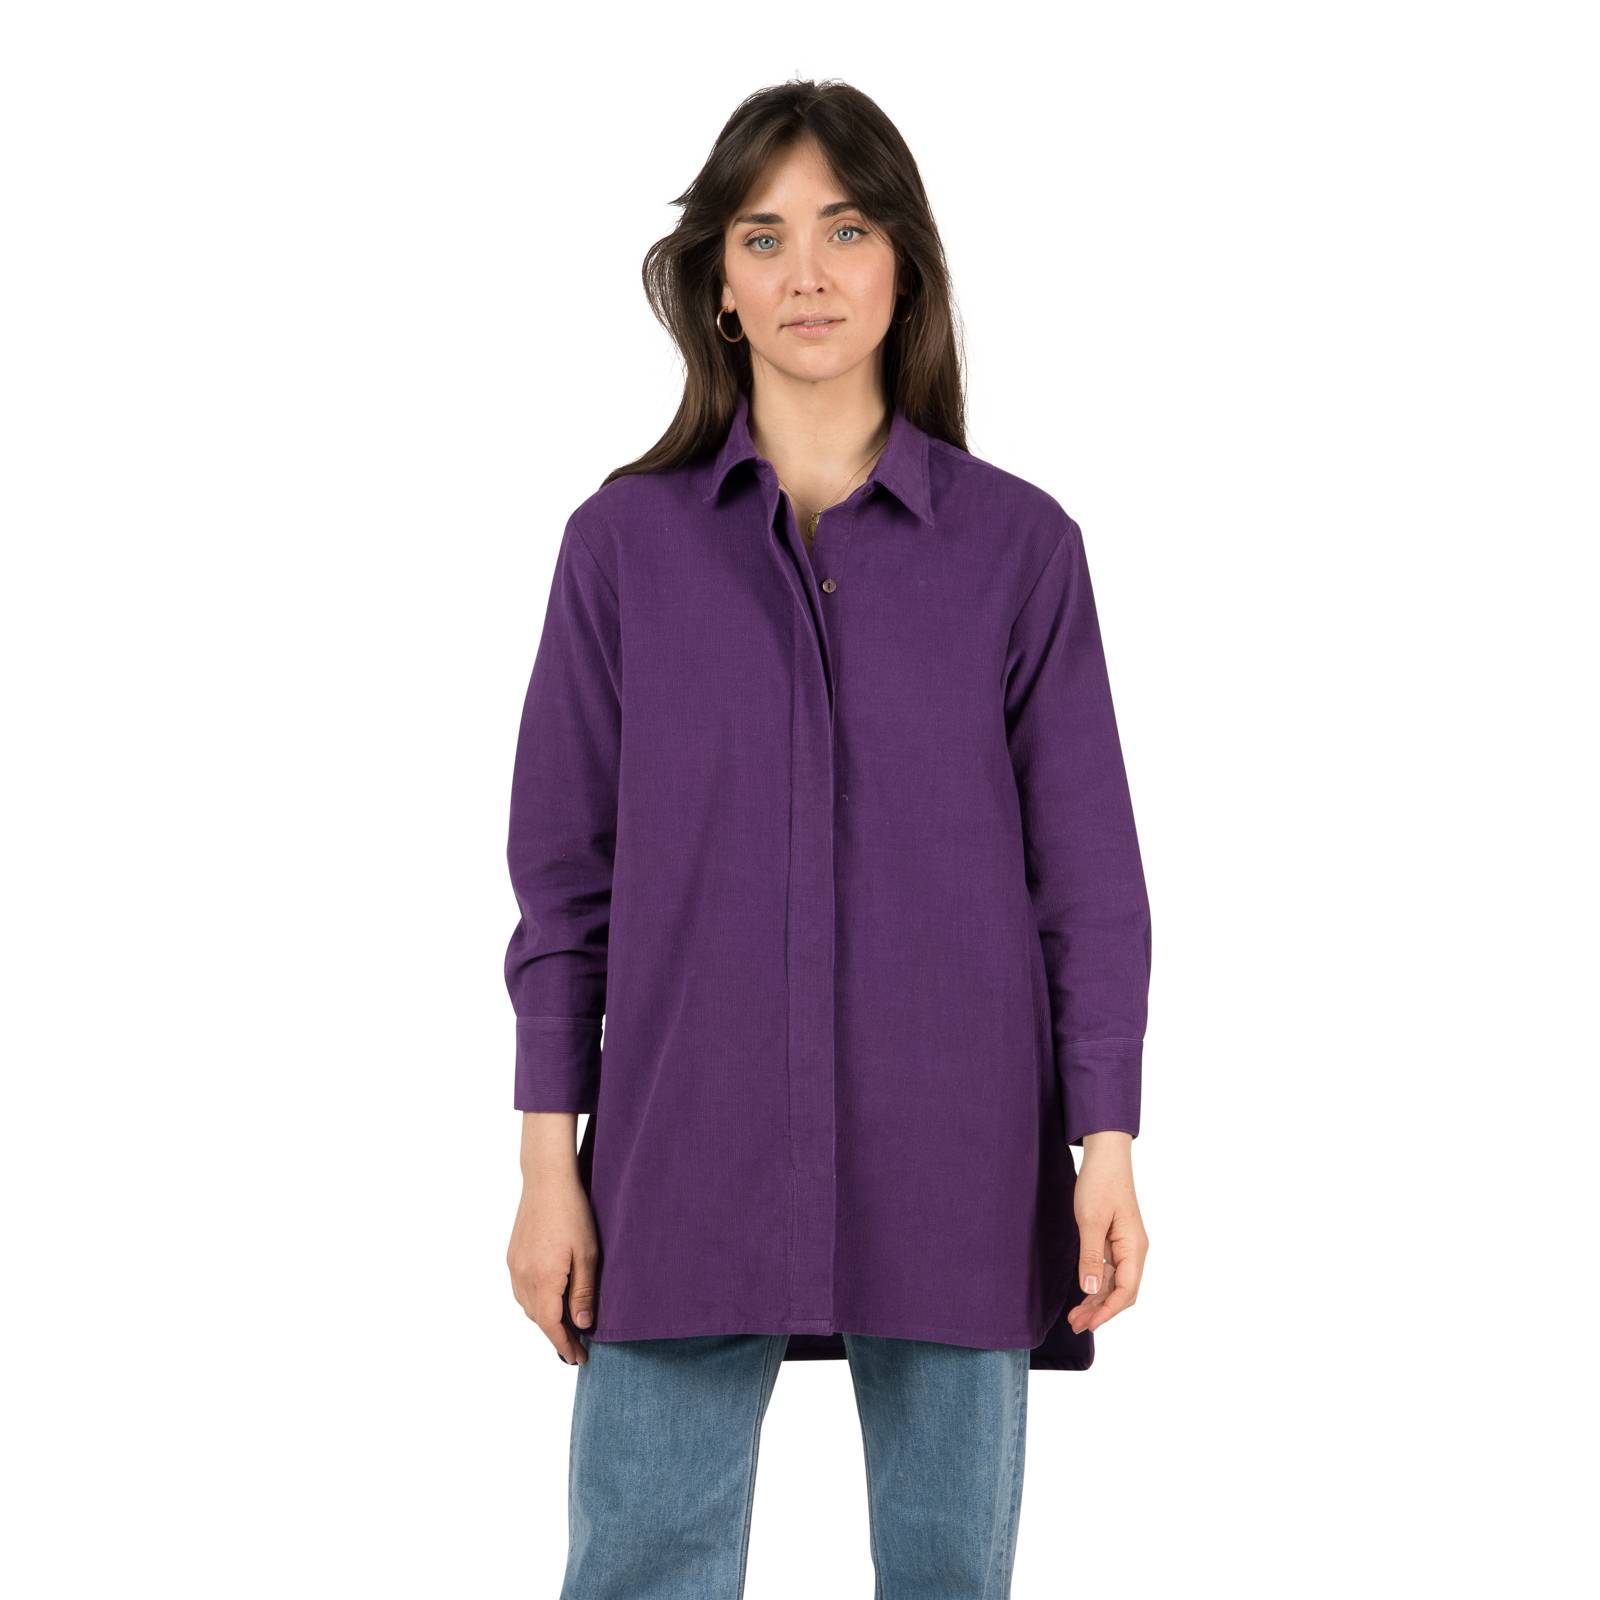 Chemises et blouses Chemise Hugette Velvet 100% Coton Ethnique VT1621 PURPLE